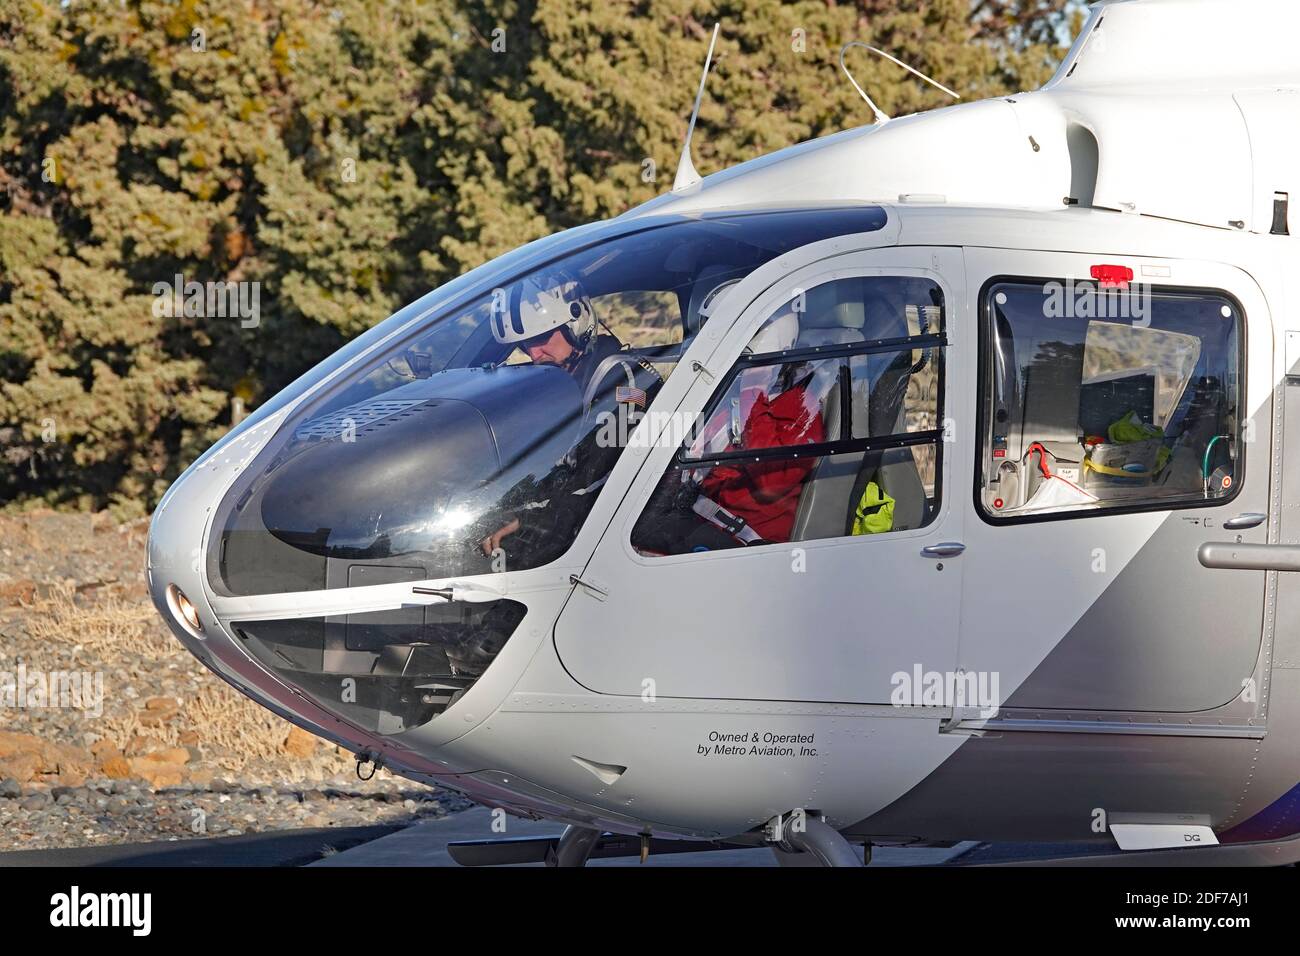 Une ambulance aérienne Eurocopter EC130 prend le décollage d'un plateau d'atterrissage d'hélicoptère dans un hôpital régional de l'Oregon, en vol vers un site d'accident pour prendre un vic Banque D'Images